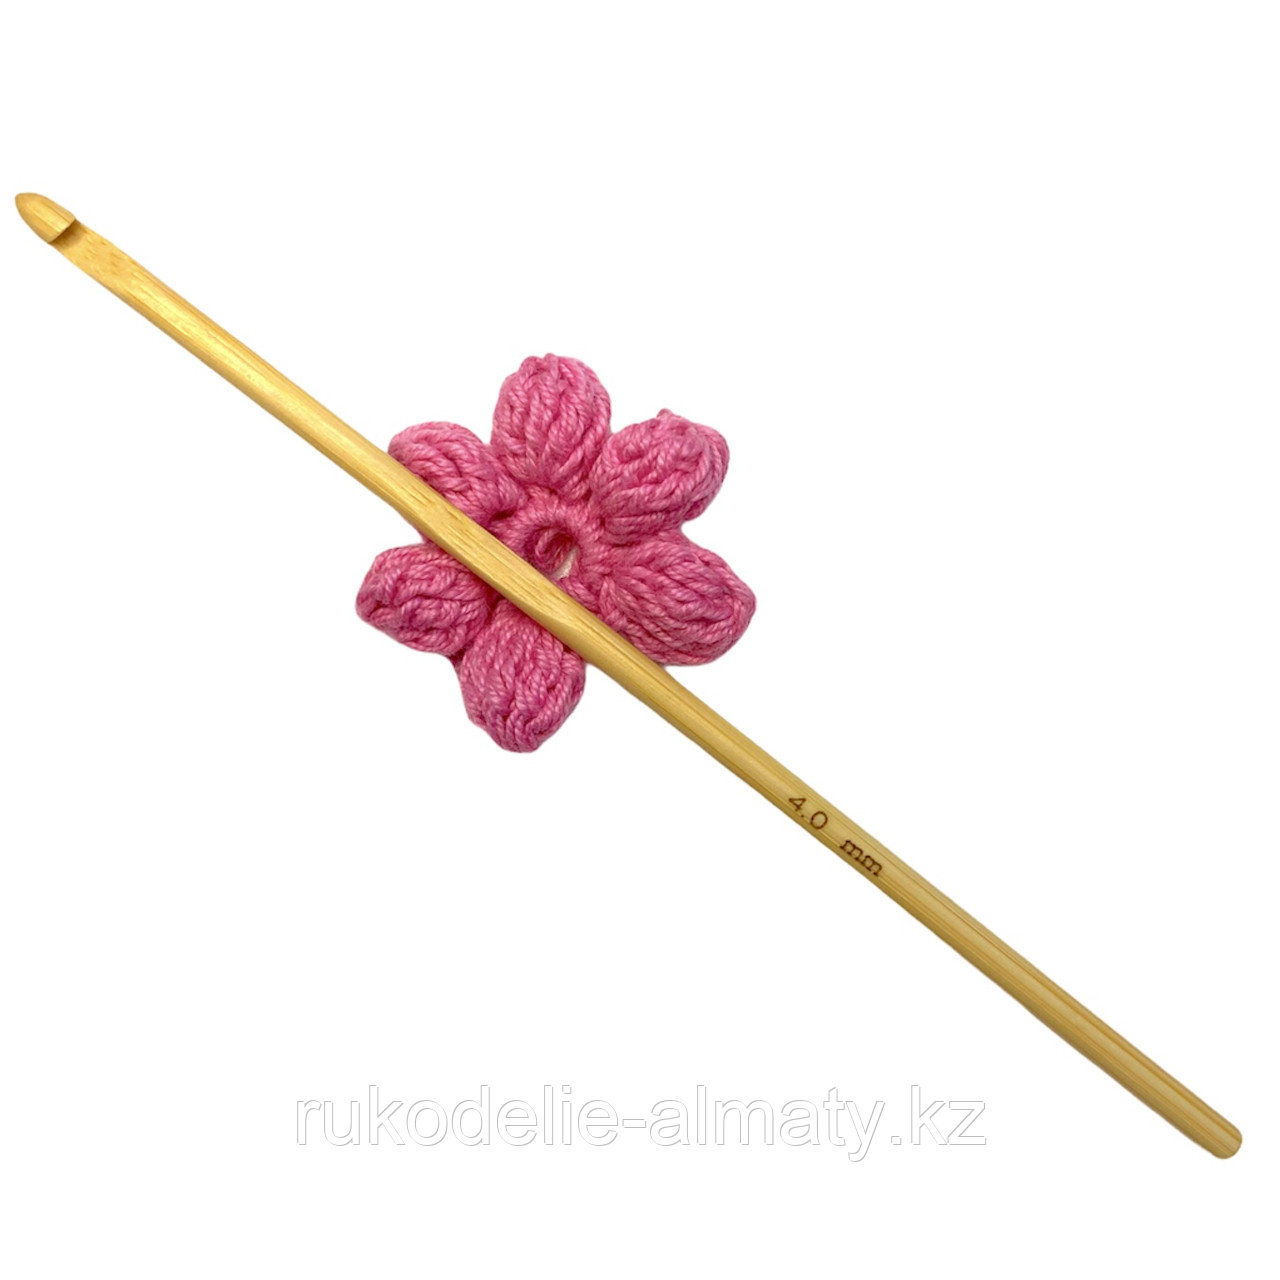 Крючок для вязания бамбуковый 4